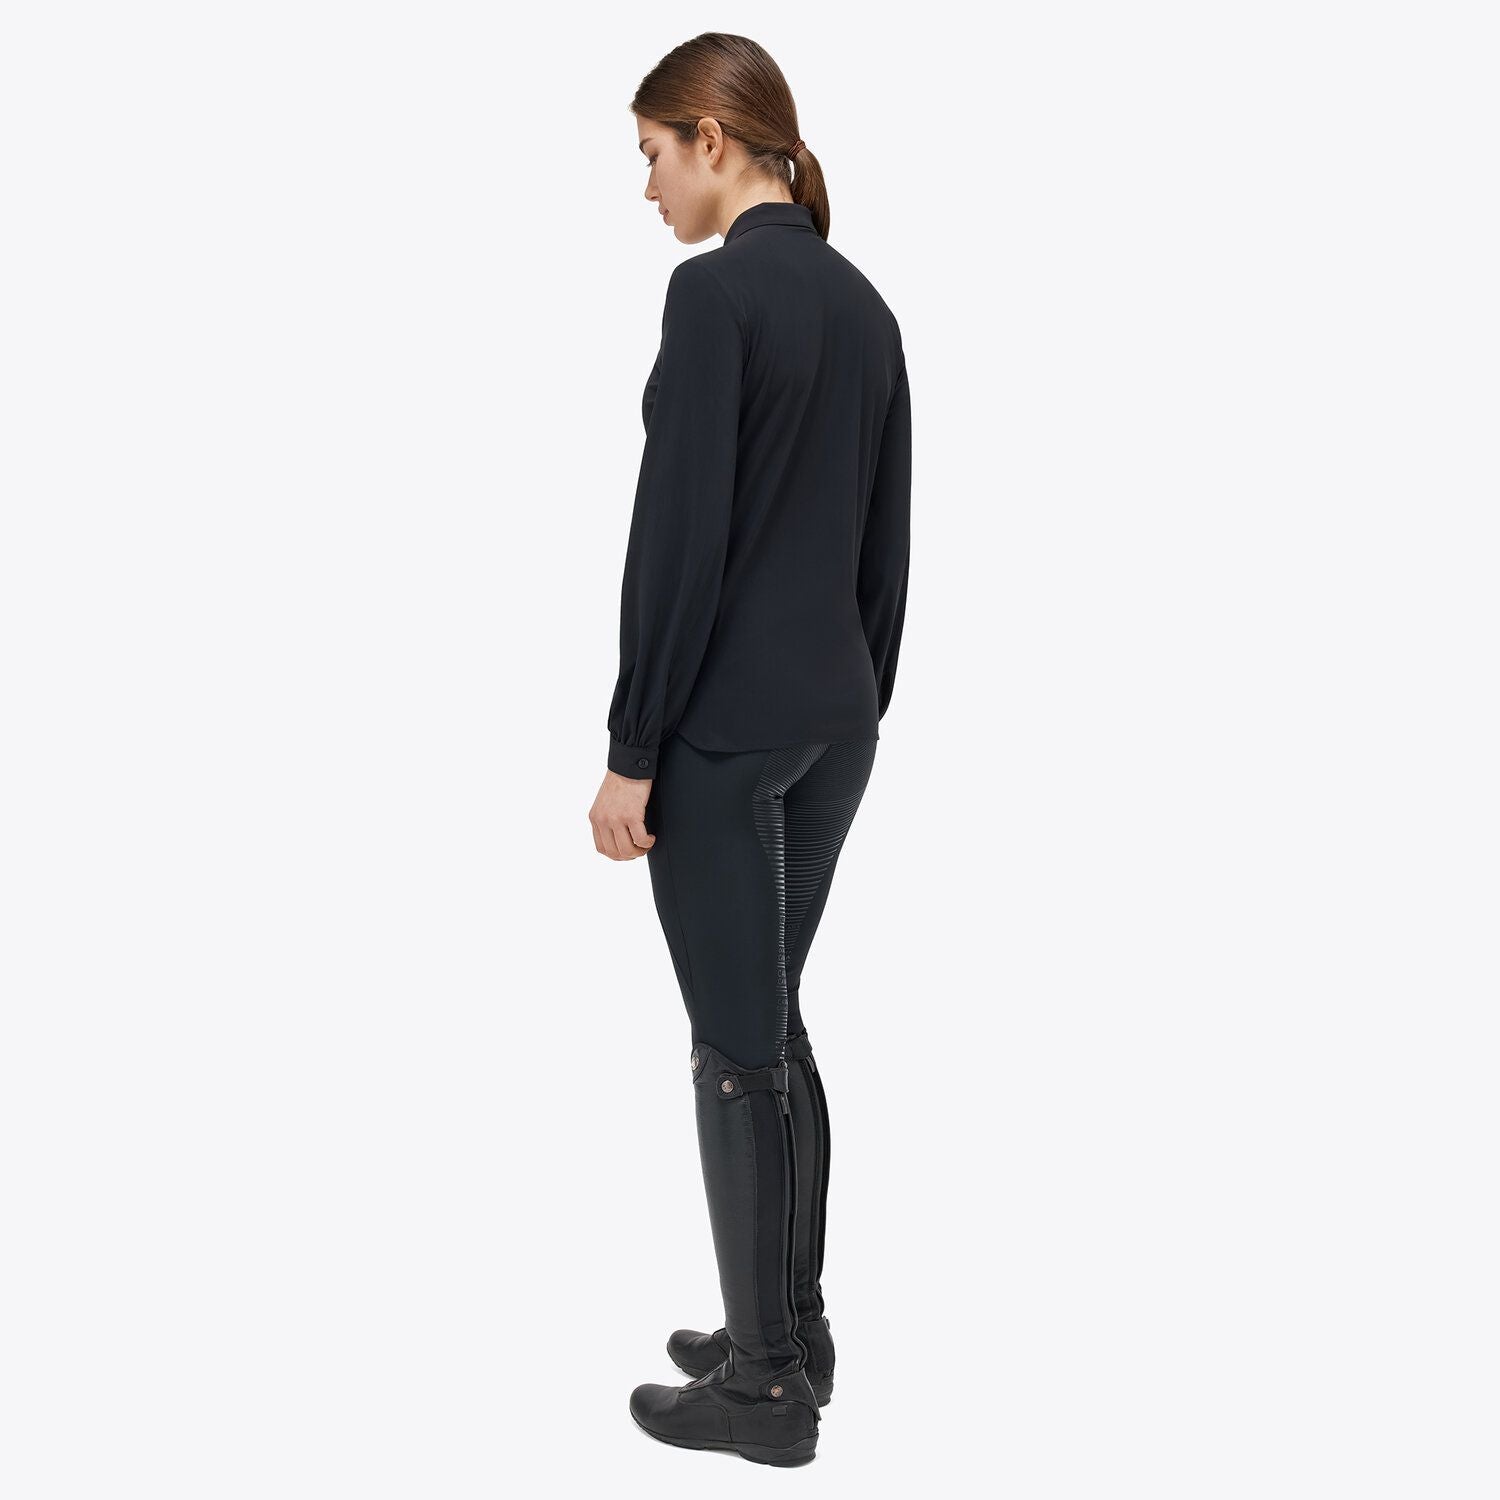 Langärmliges Lifestyle-Shirt aus leichtem Jersey für Frauen in Schwarz